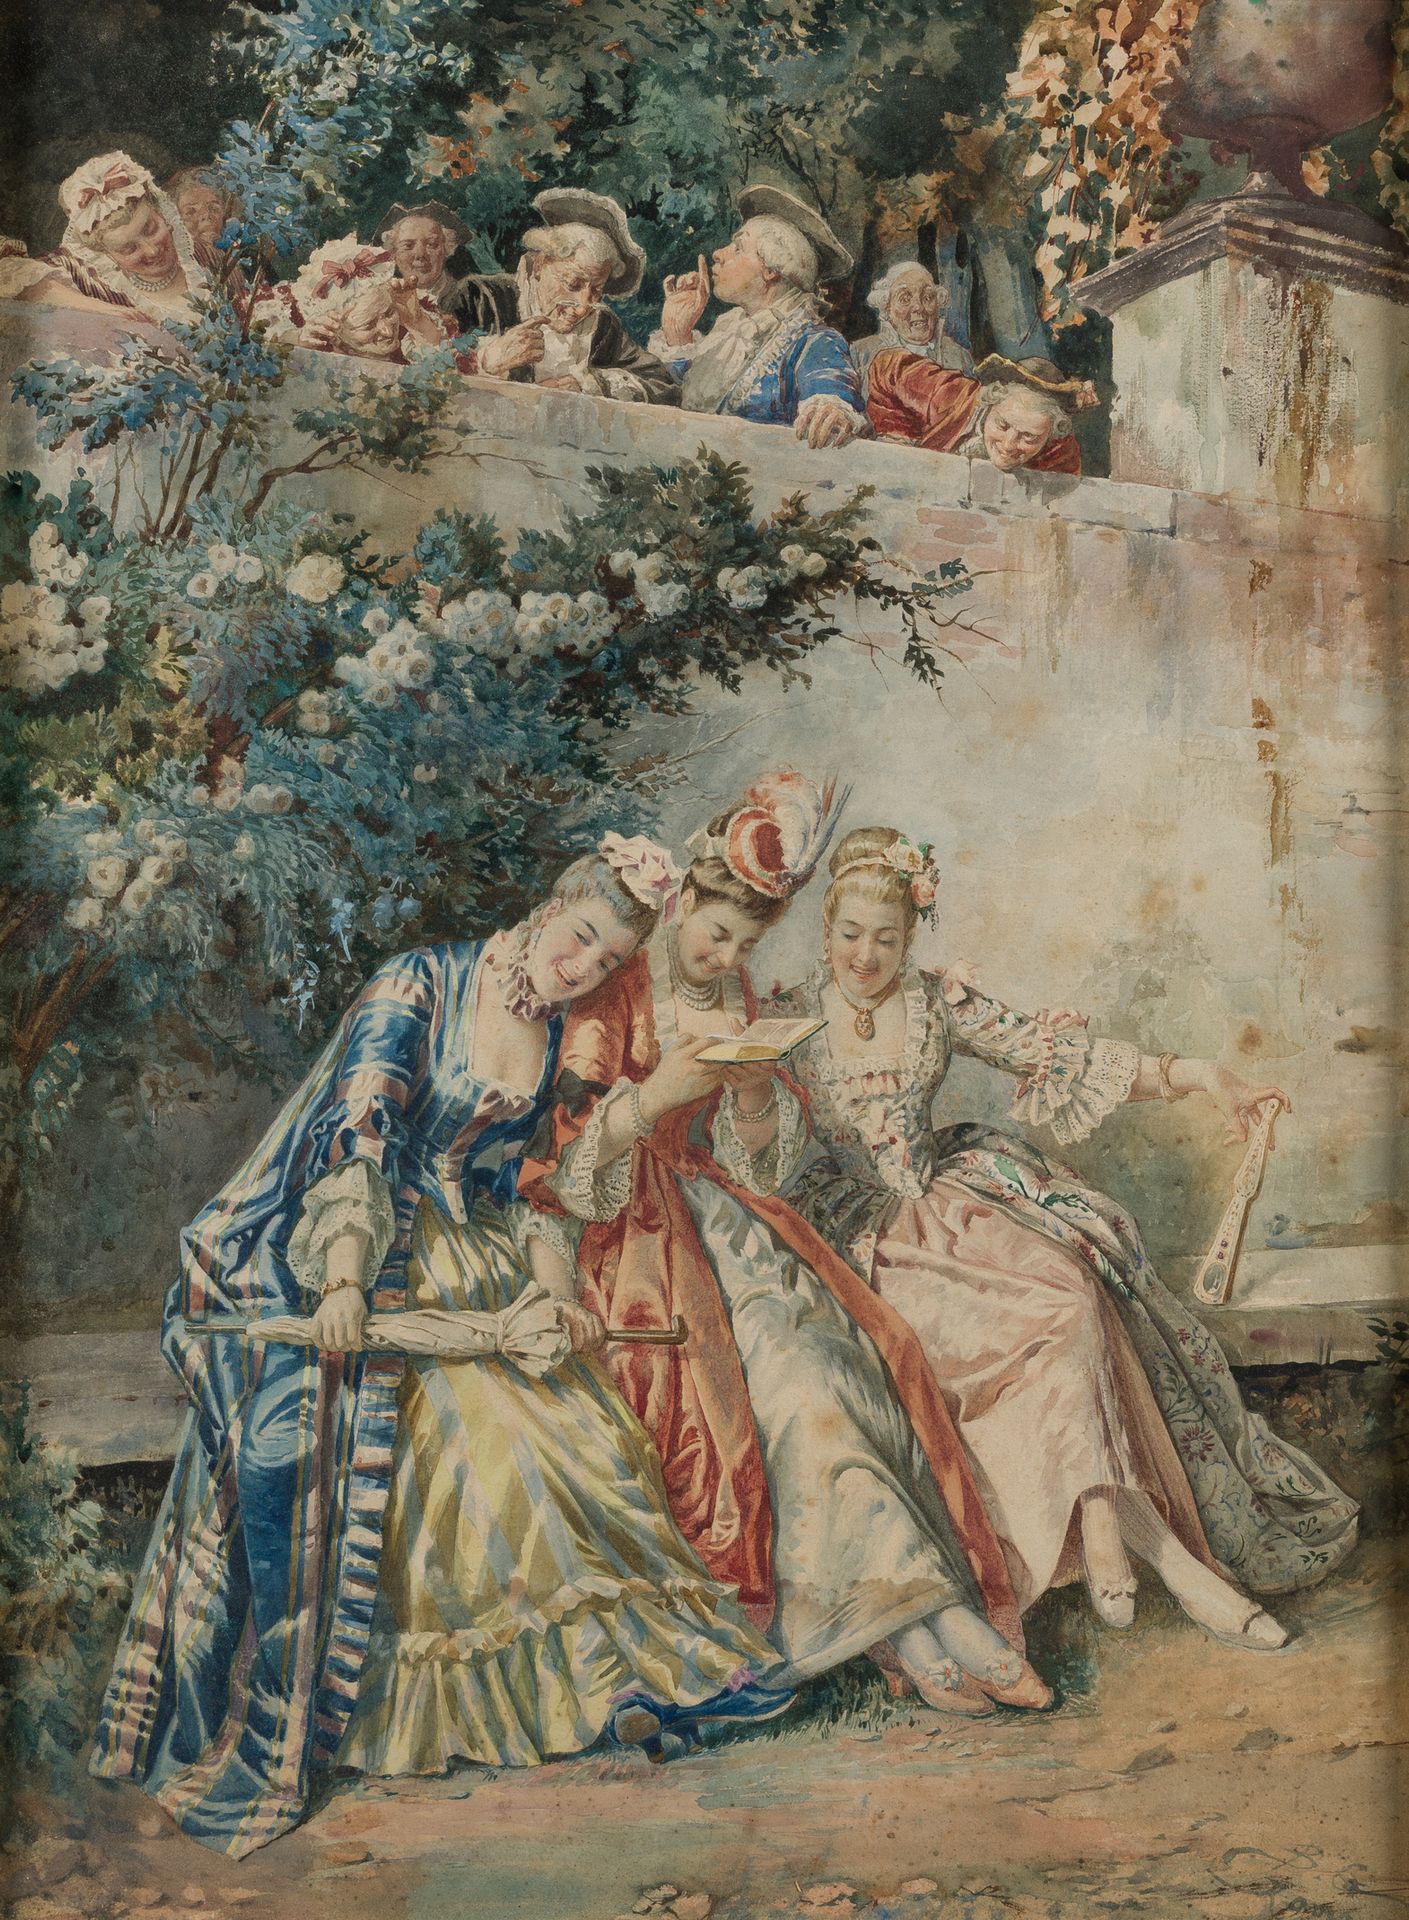 BALDOMERO GALOFRE (1849 / 1902) "Gallant scene" 右下角有签名和题字 "Roma"。纸上水彩，61 x 46 cm